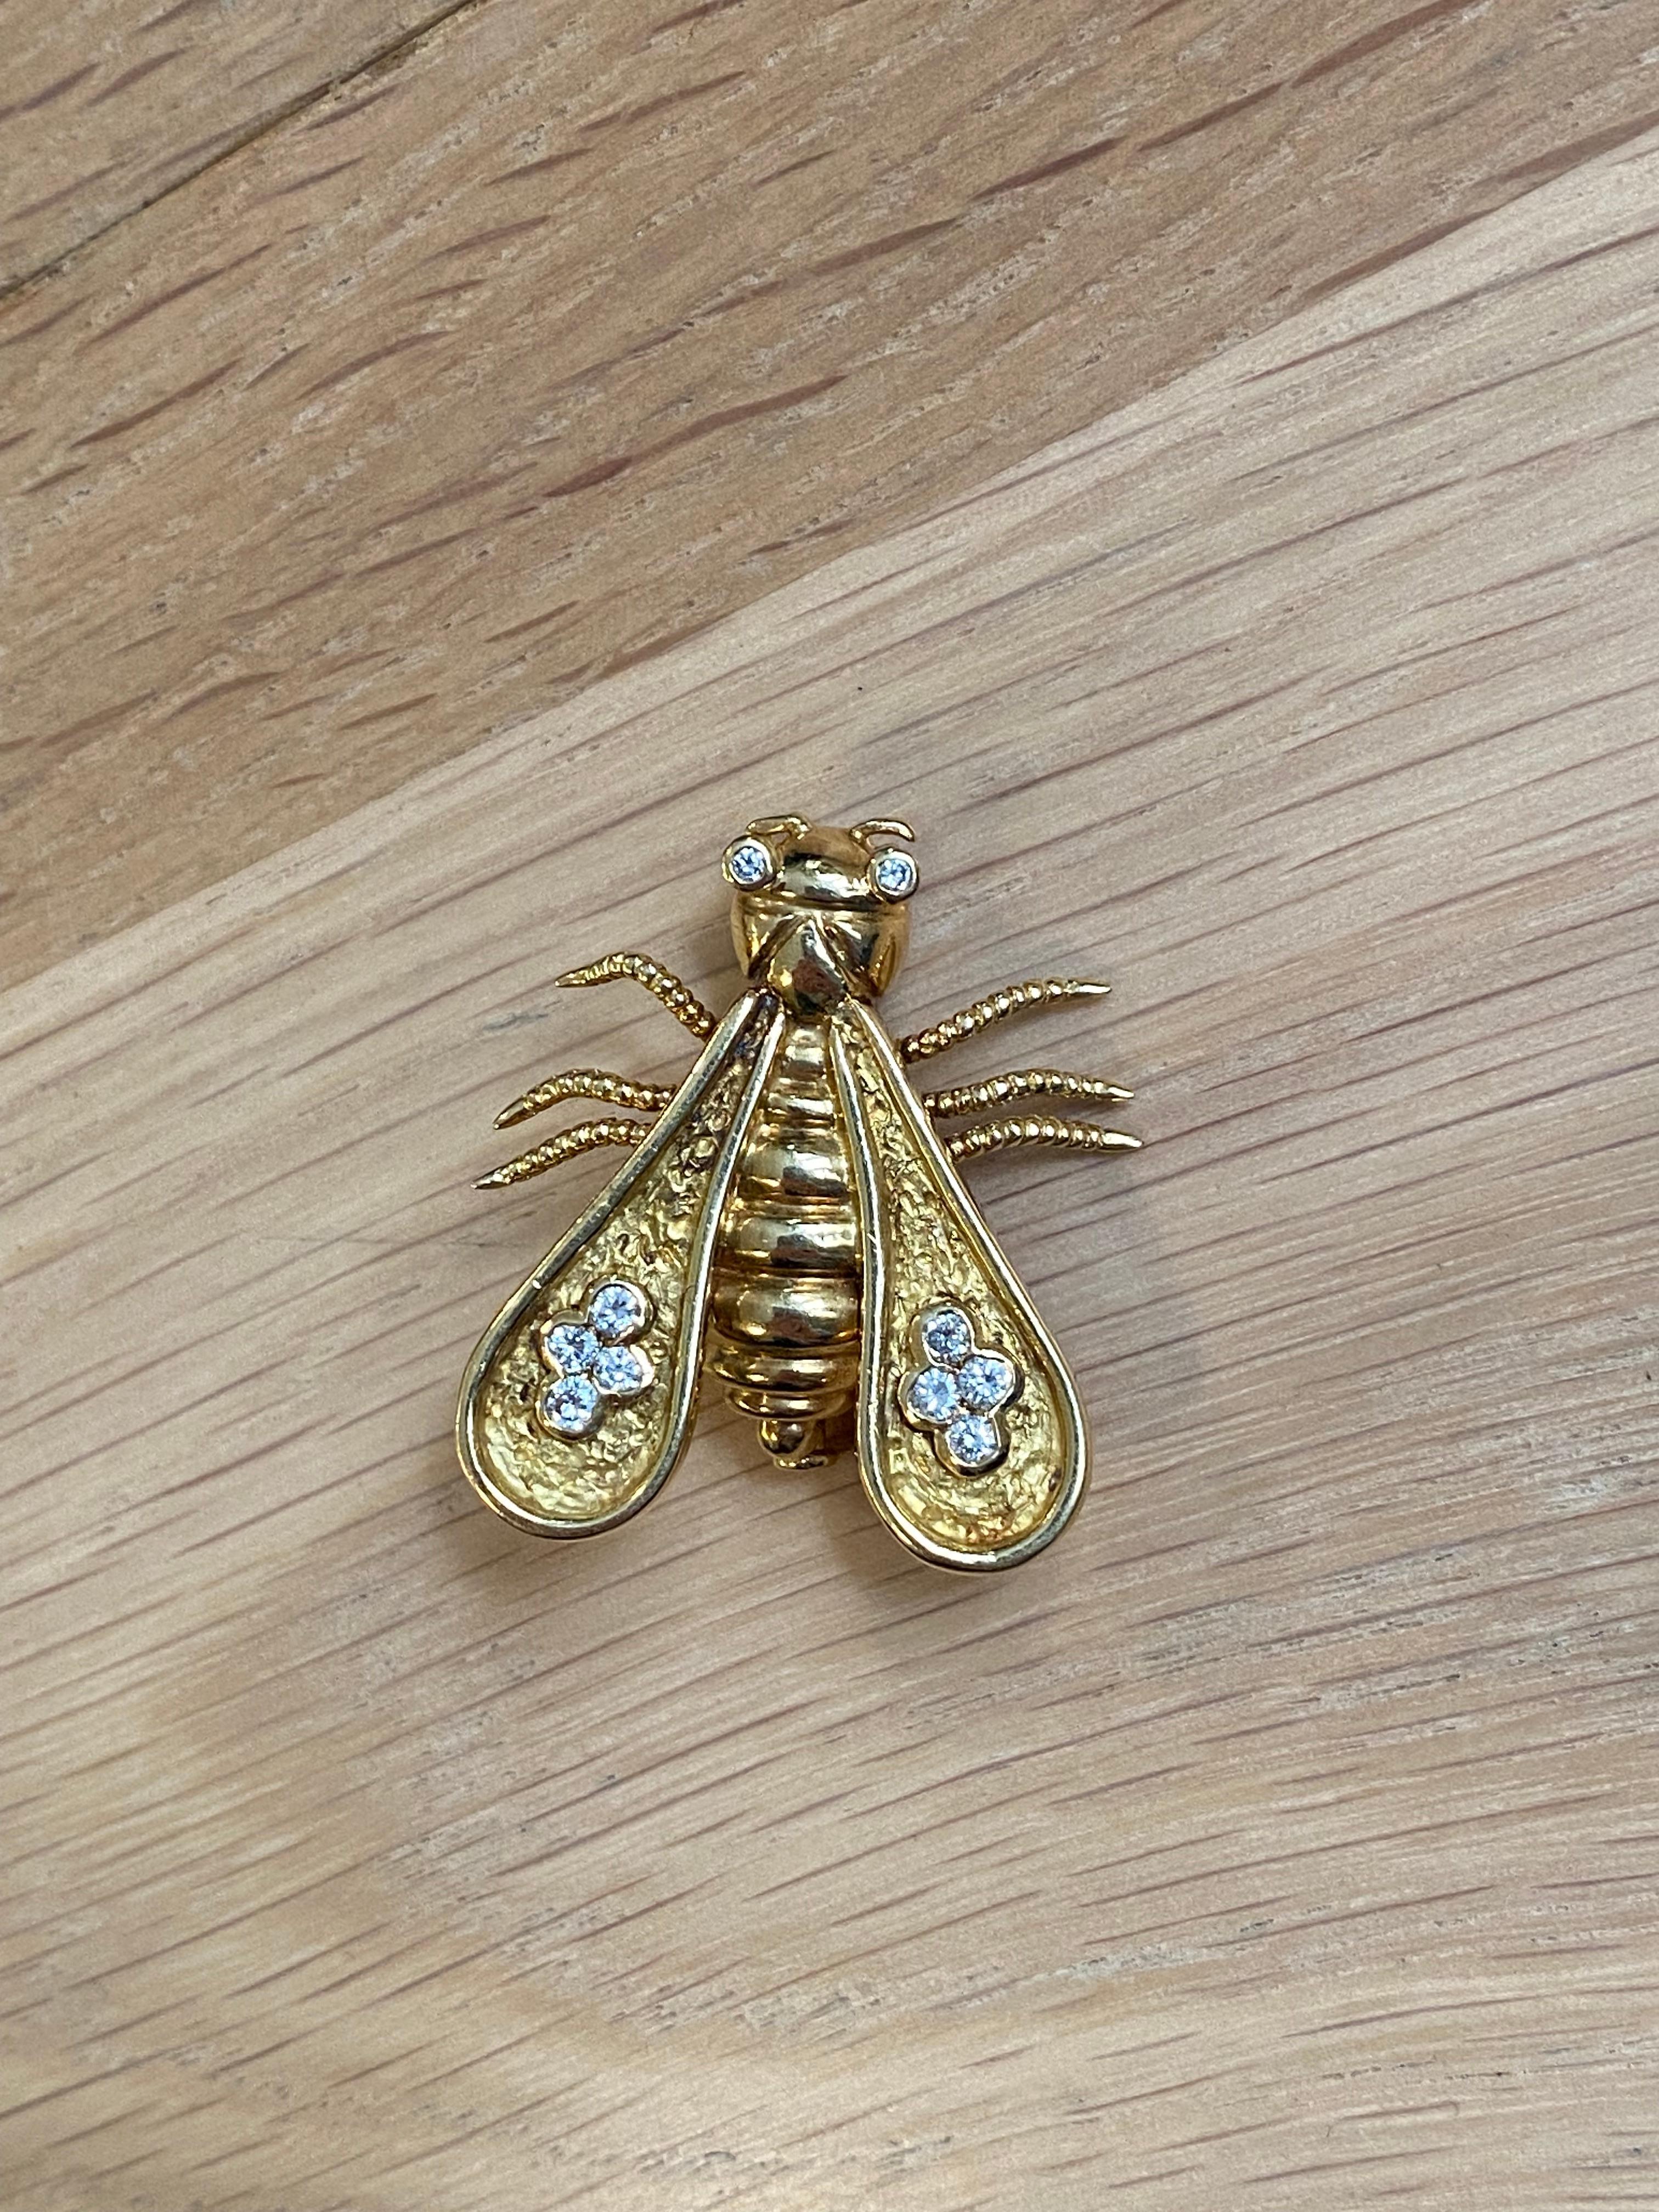 antique bee brooch